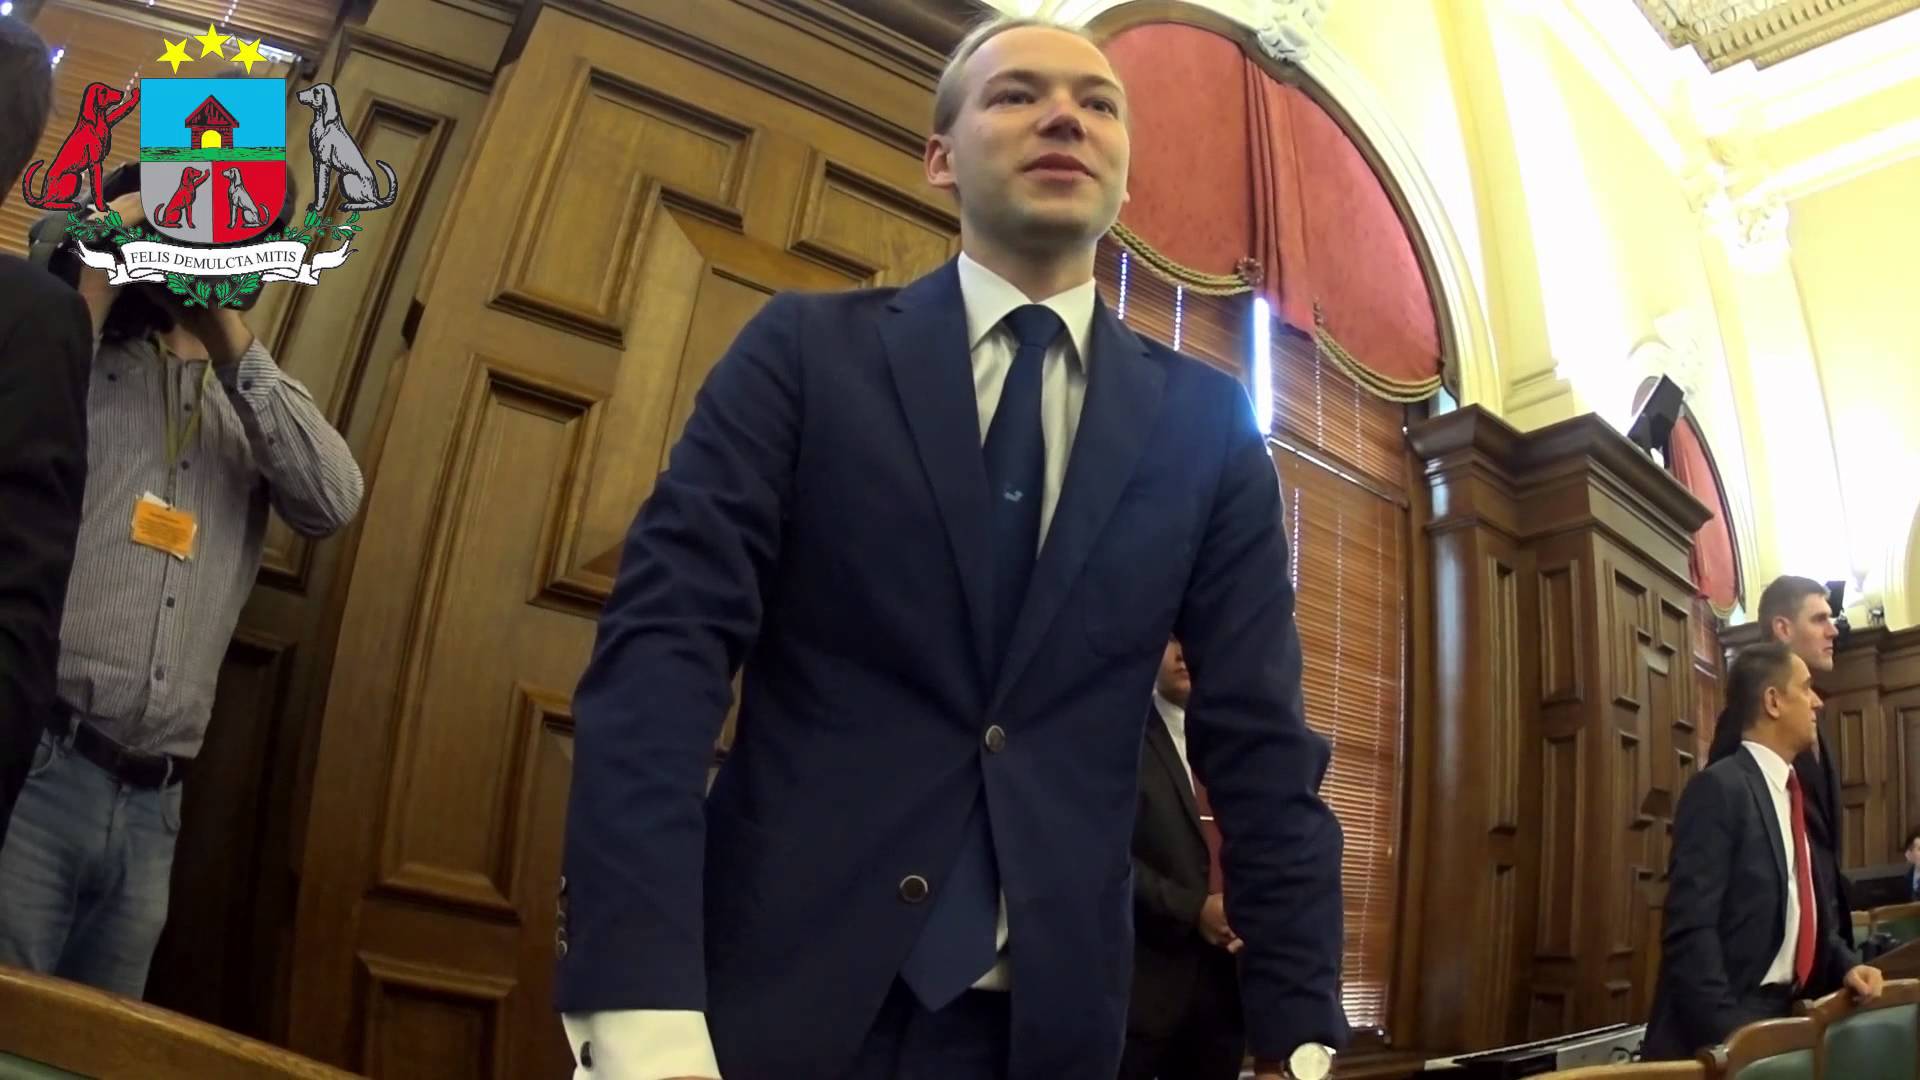 VIDEO – Artuss Kaimiņš tur solījumu un uz Saeimu dodas ar video kameru un iztaujā arī Junkuru!